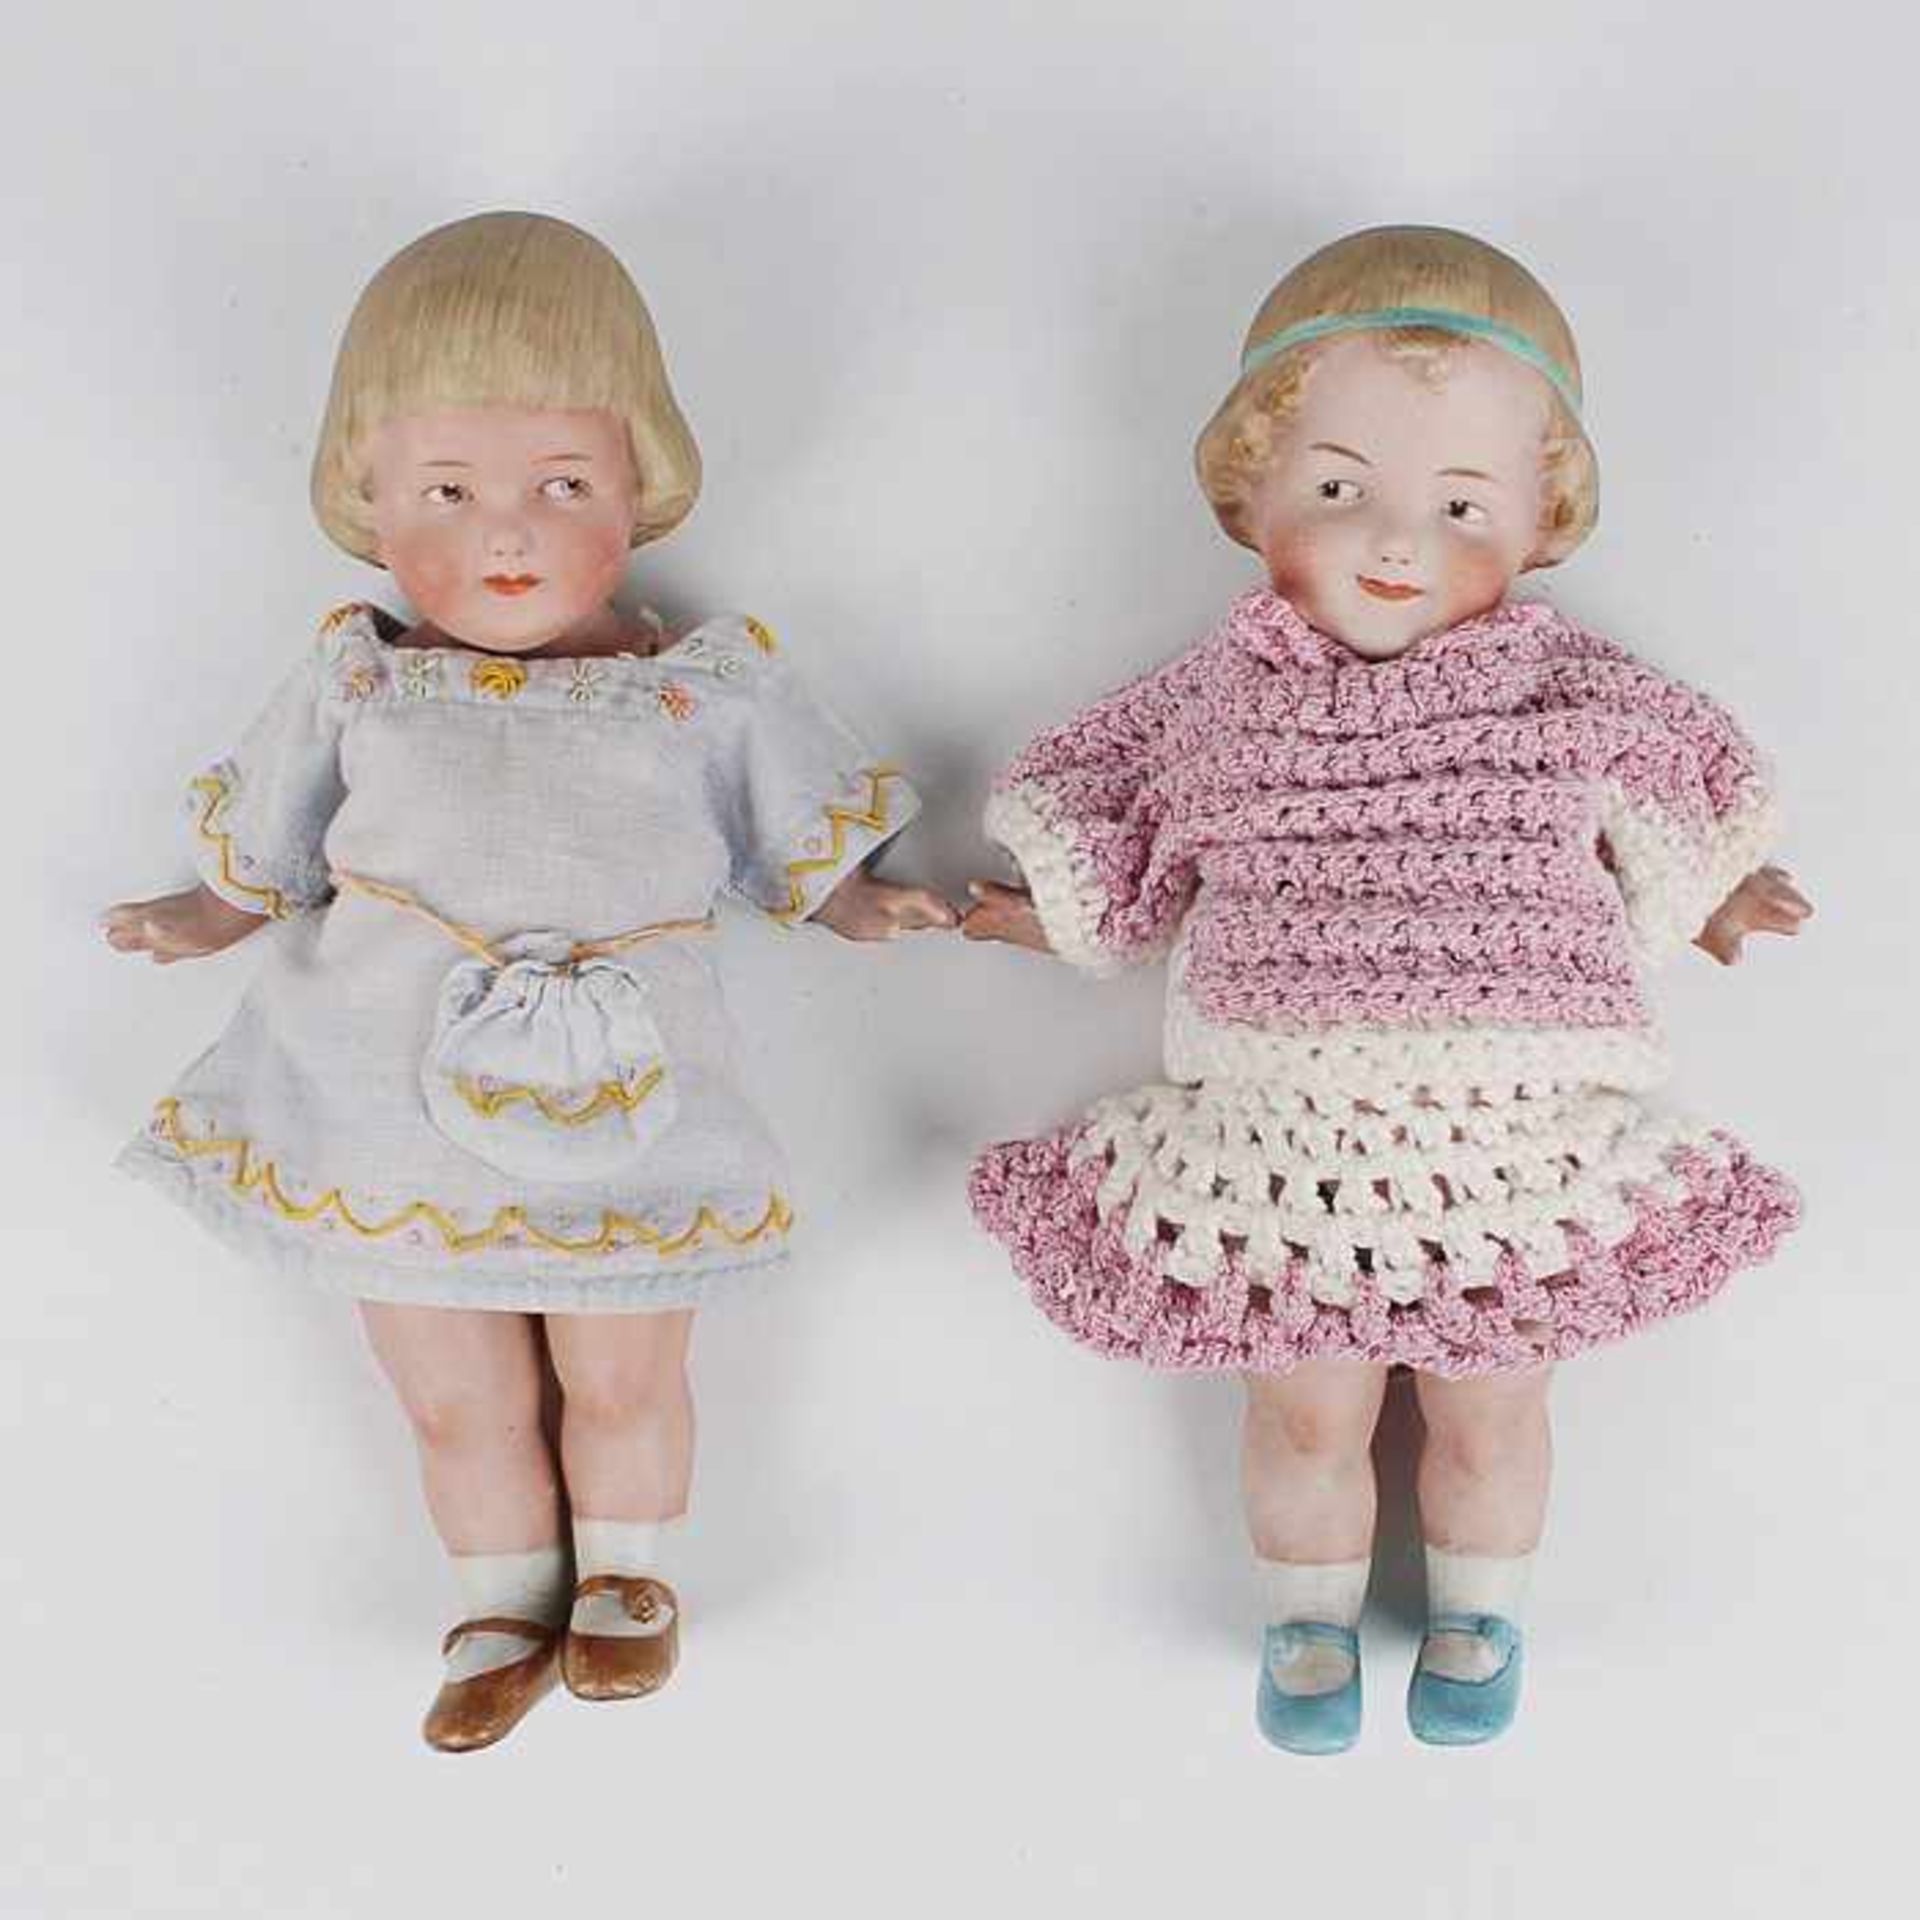 Puppen2 Mädchen, Biskuitporzellan, fester Kopf, modellierte Haare, gemalte Augen, 1x am Hals